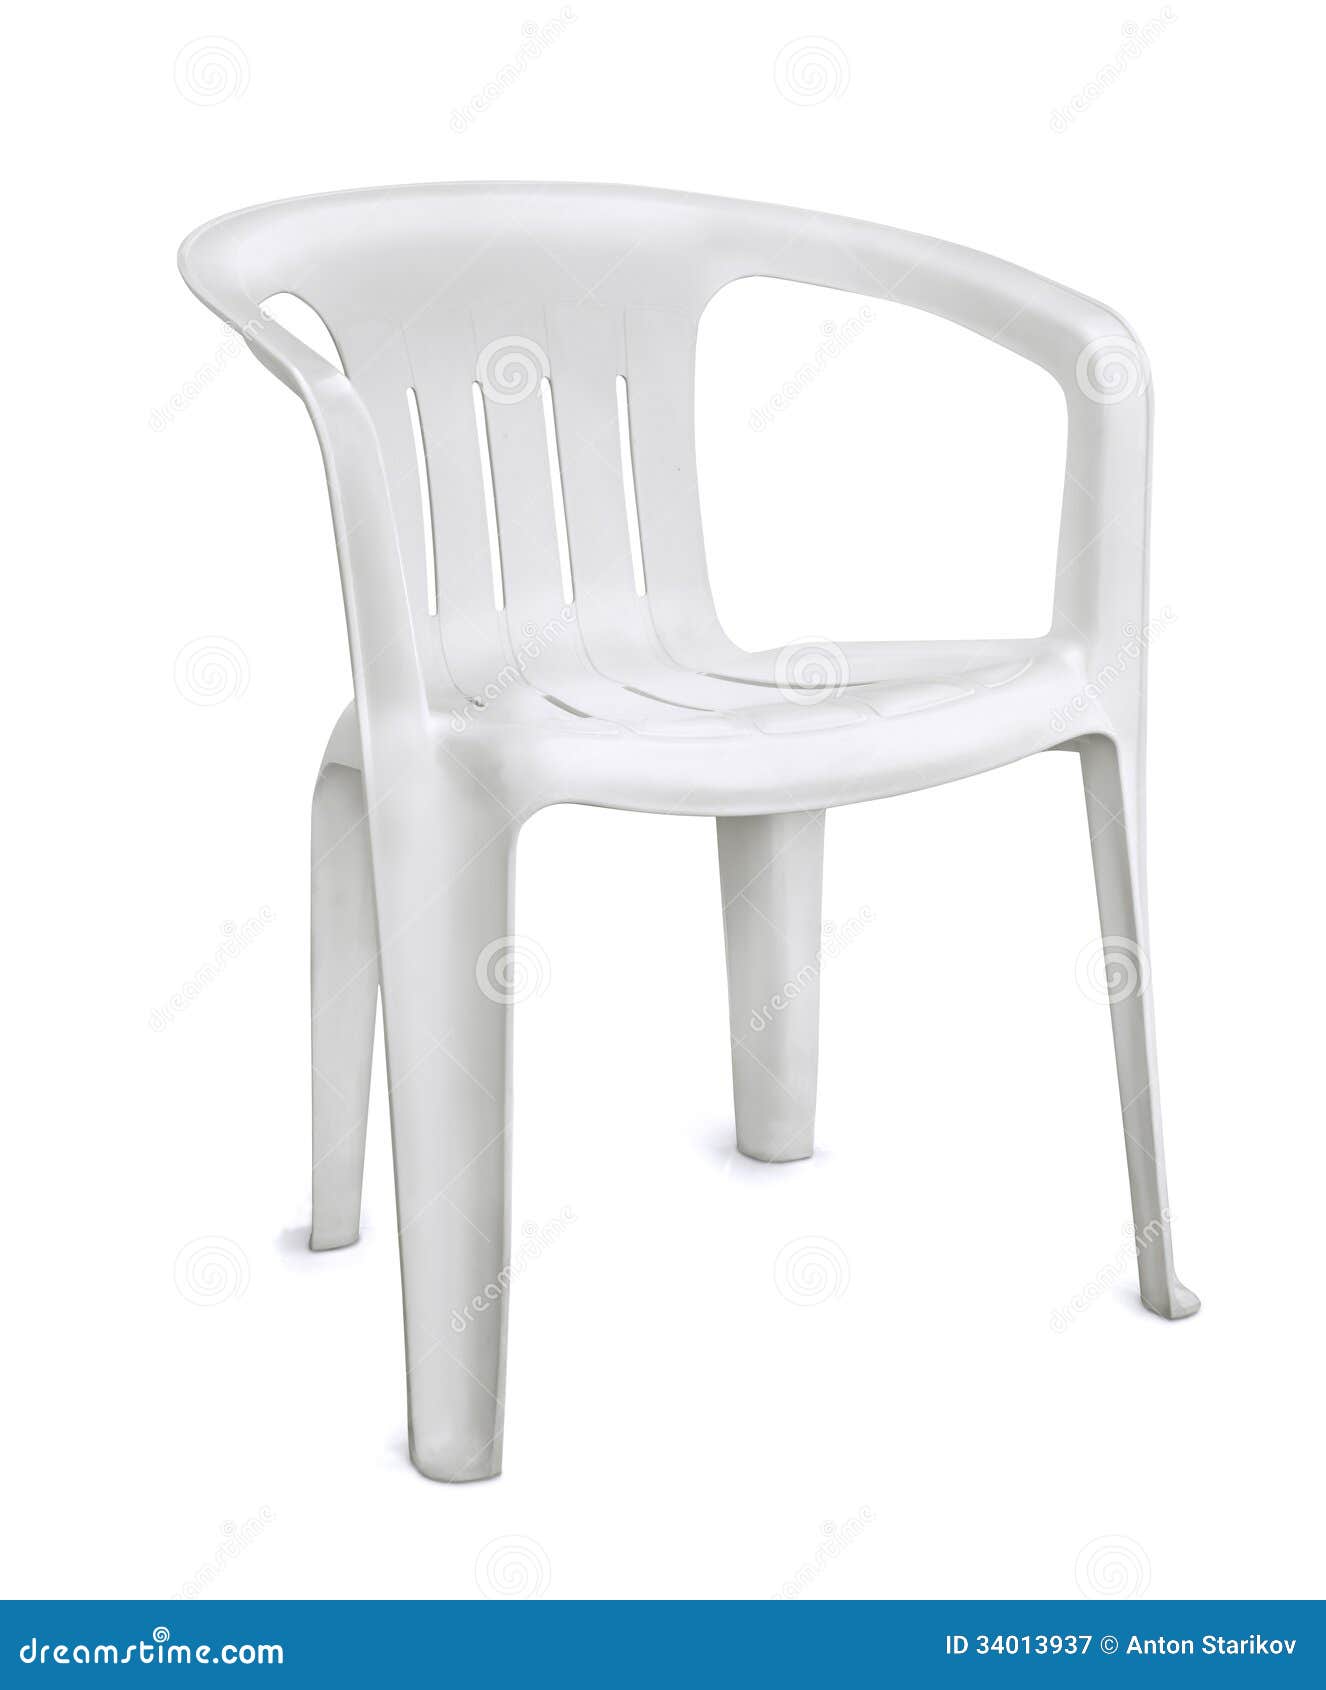 openbaar Verzending Scheiding Plastic stoel stock afbeelding. Image of stoel, zitting - 34013937